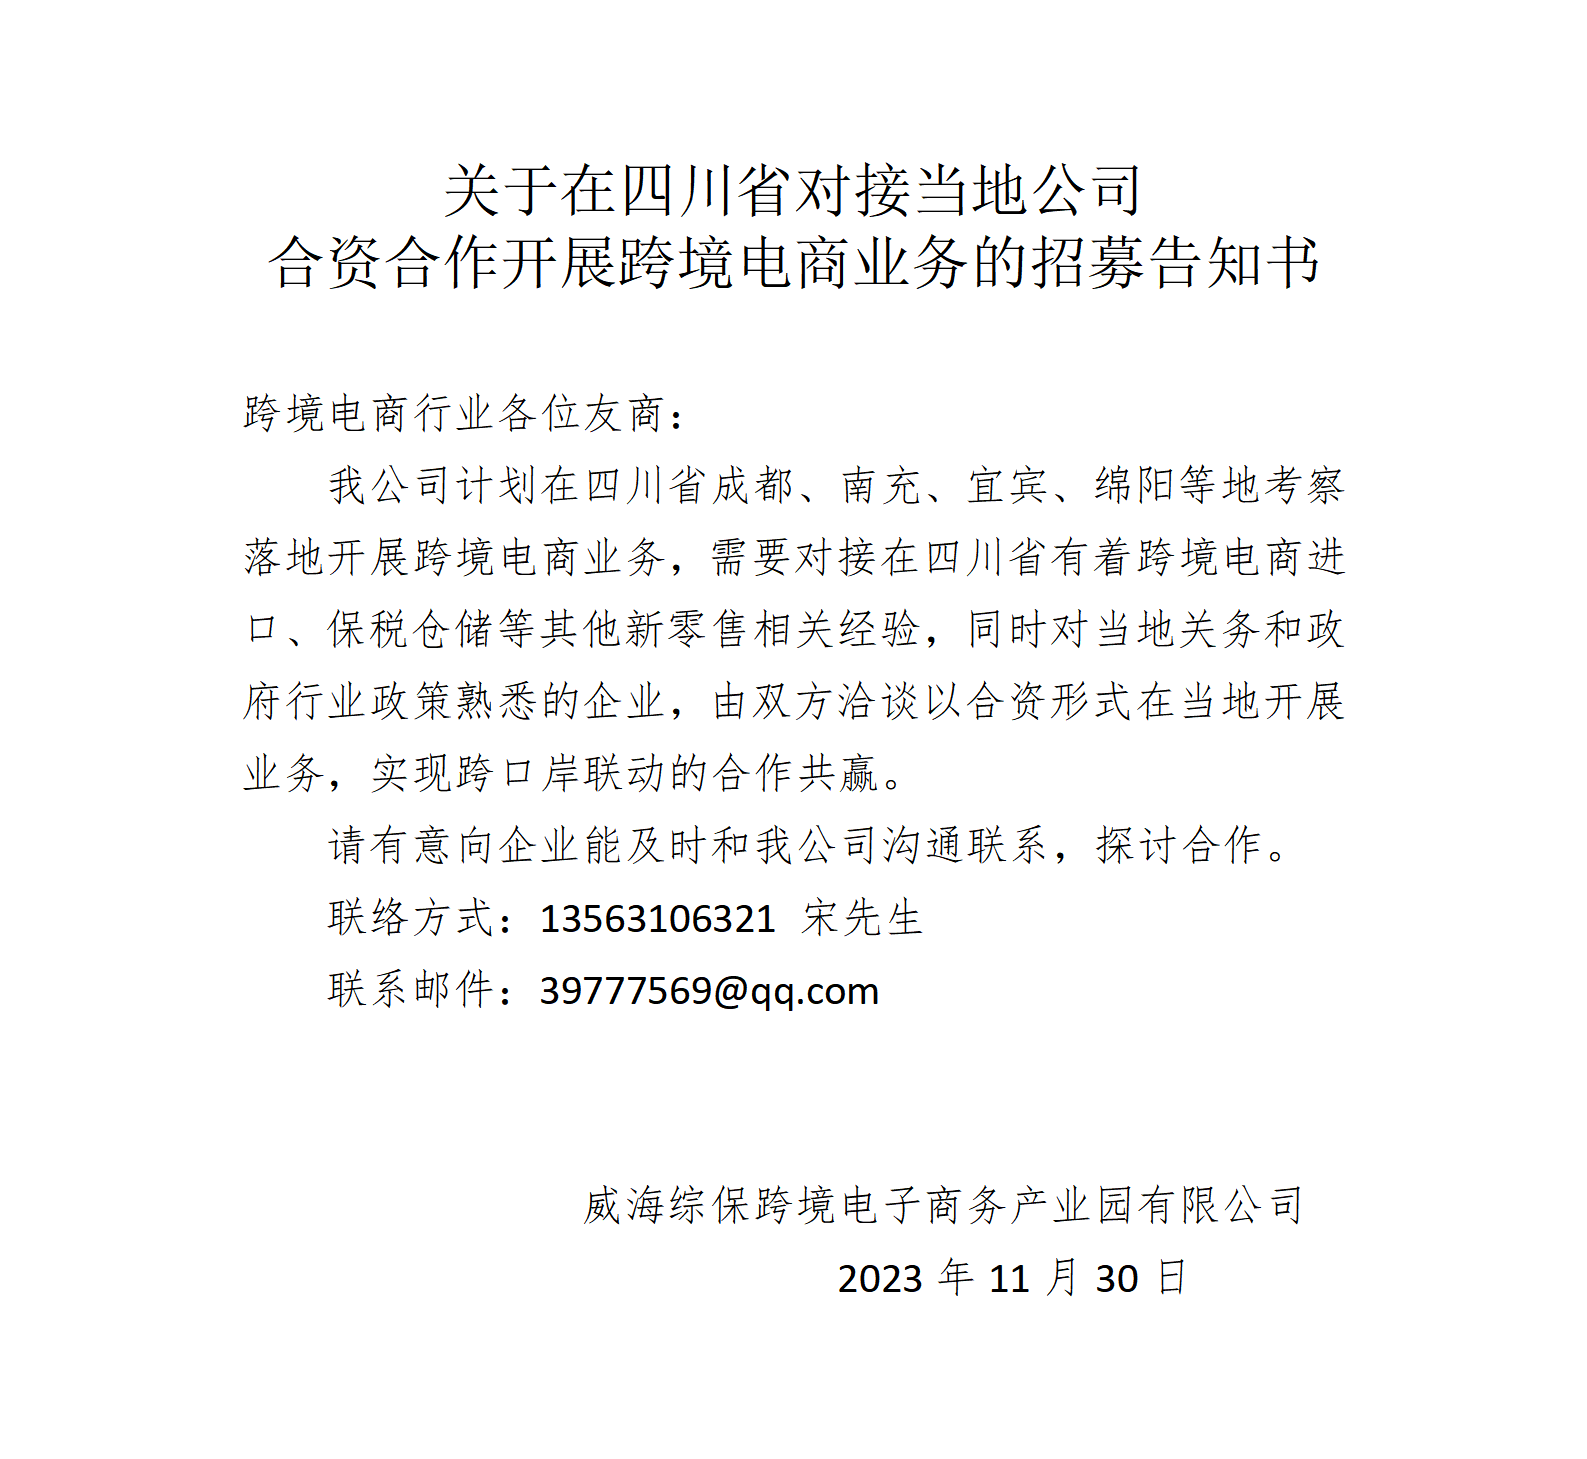 关于在四川省对接当地公司洽谈合资合作的通告_01.png